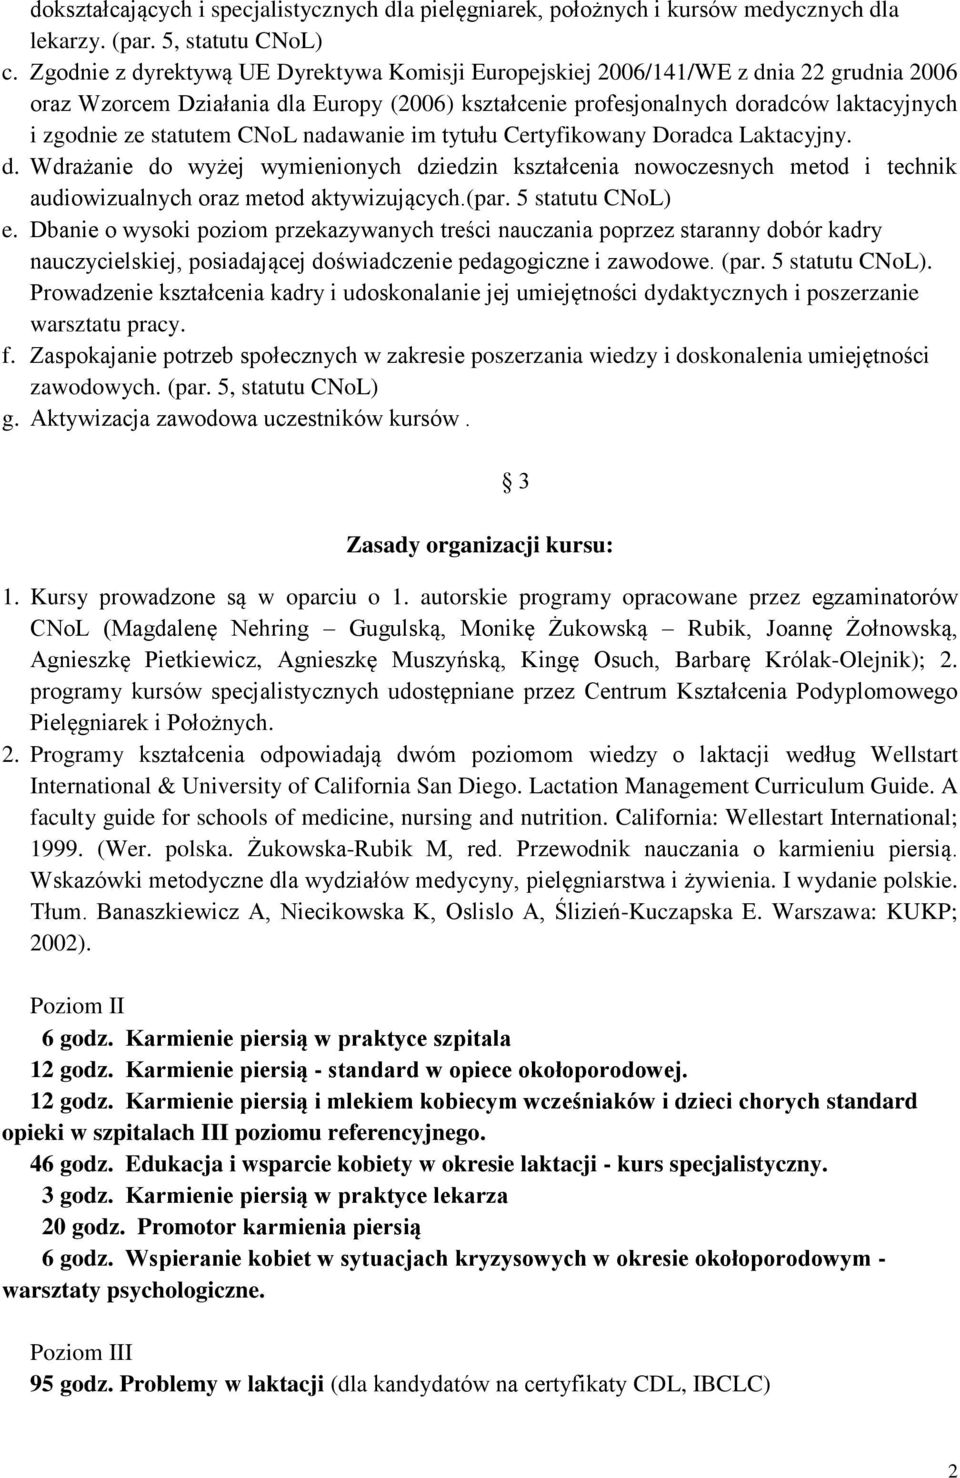 statutem CNoL nadawanie im tytułu Certyfikowany Doradca Laktacyjny. d. Wdrażanie do wyżej wymienionych dziedzin kształcenia nowoczesnych metod i technik audiowizualnych oraz metod aktywizujących.(par.